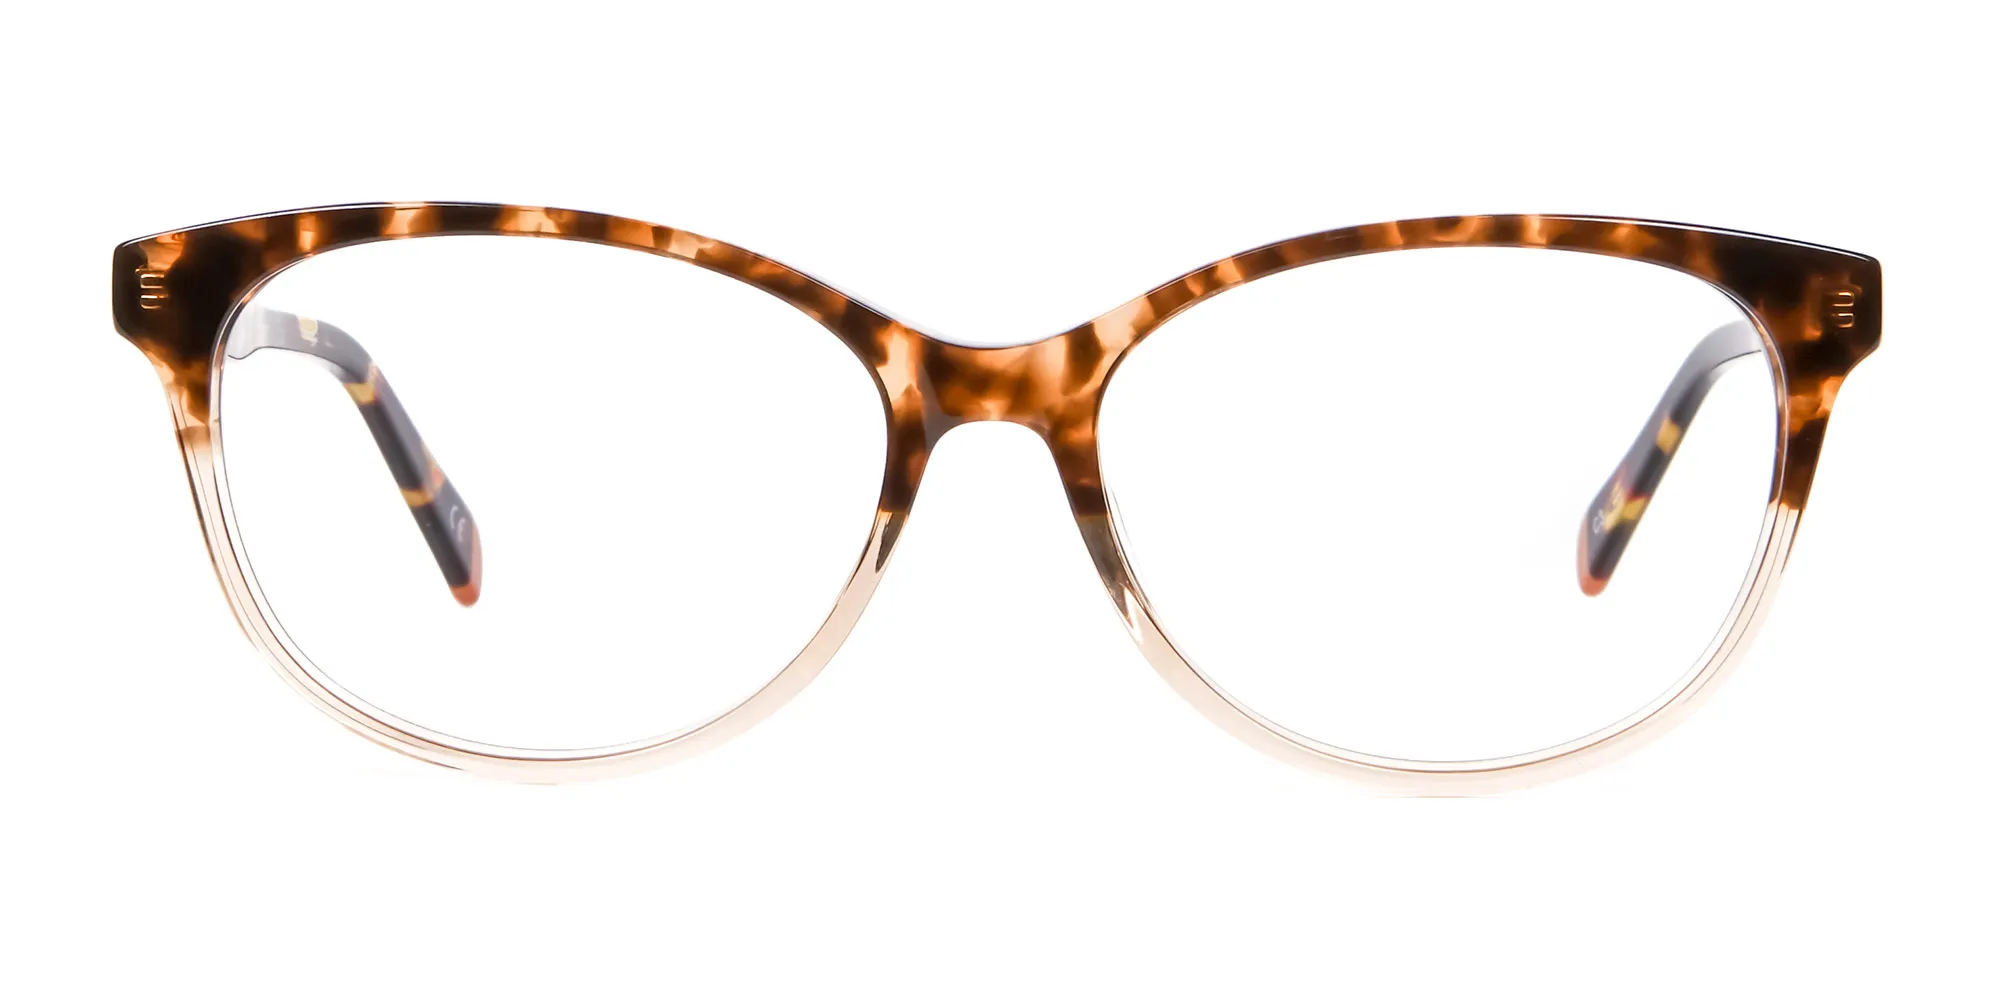 Havana & Tortoiseshell Chic Glasses - 1